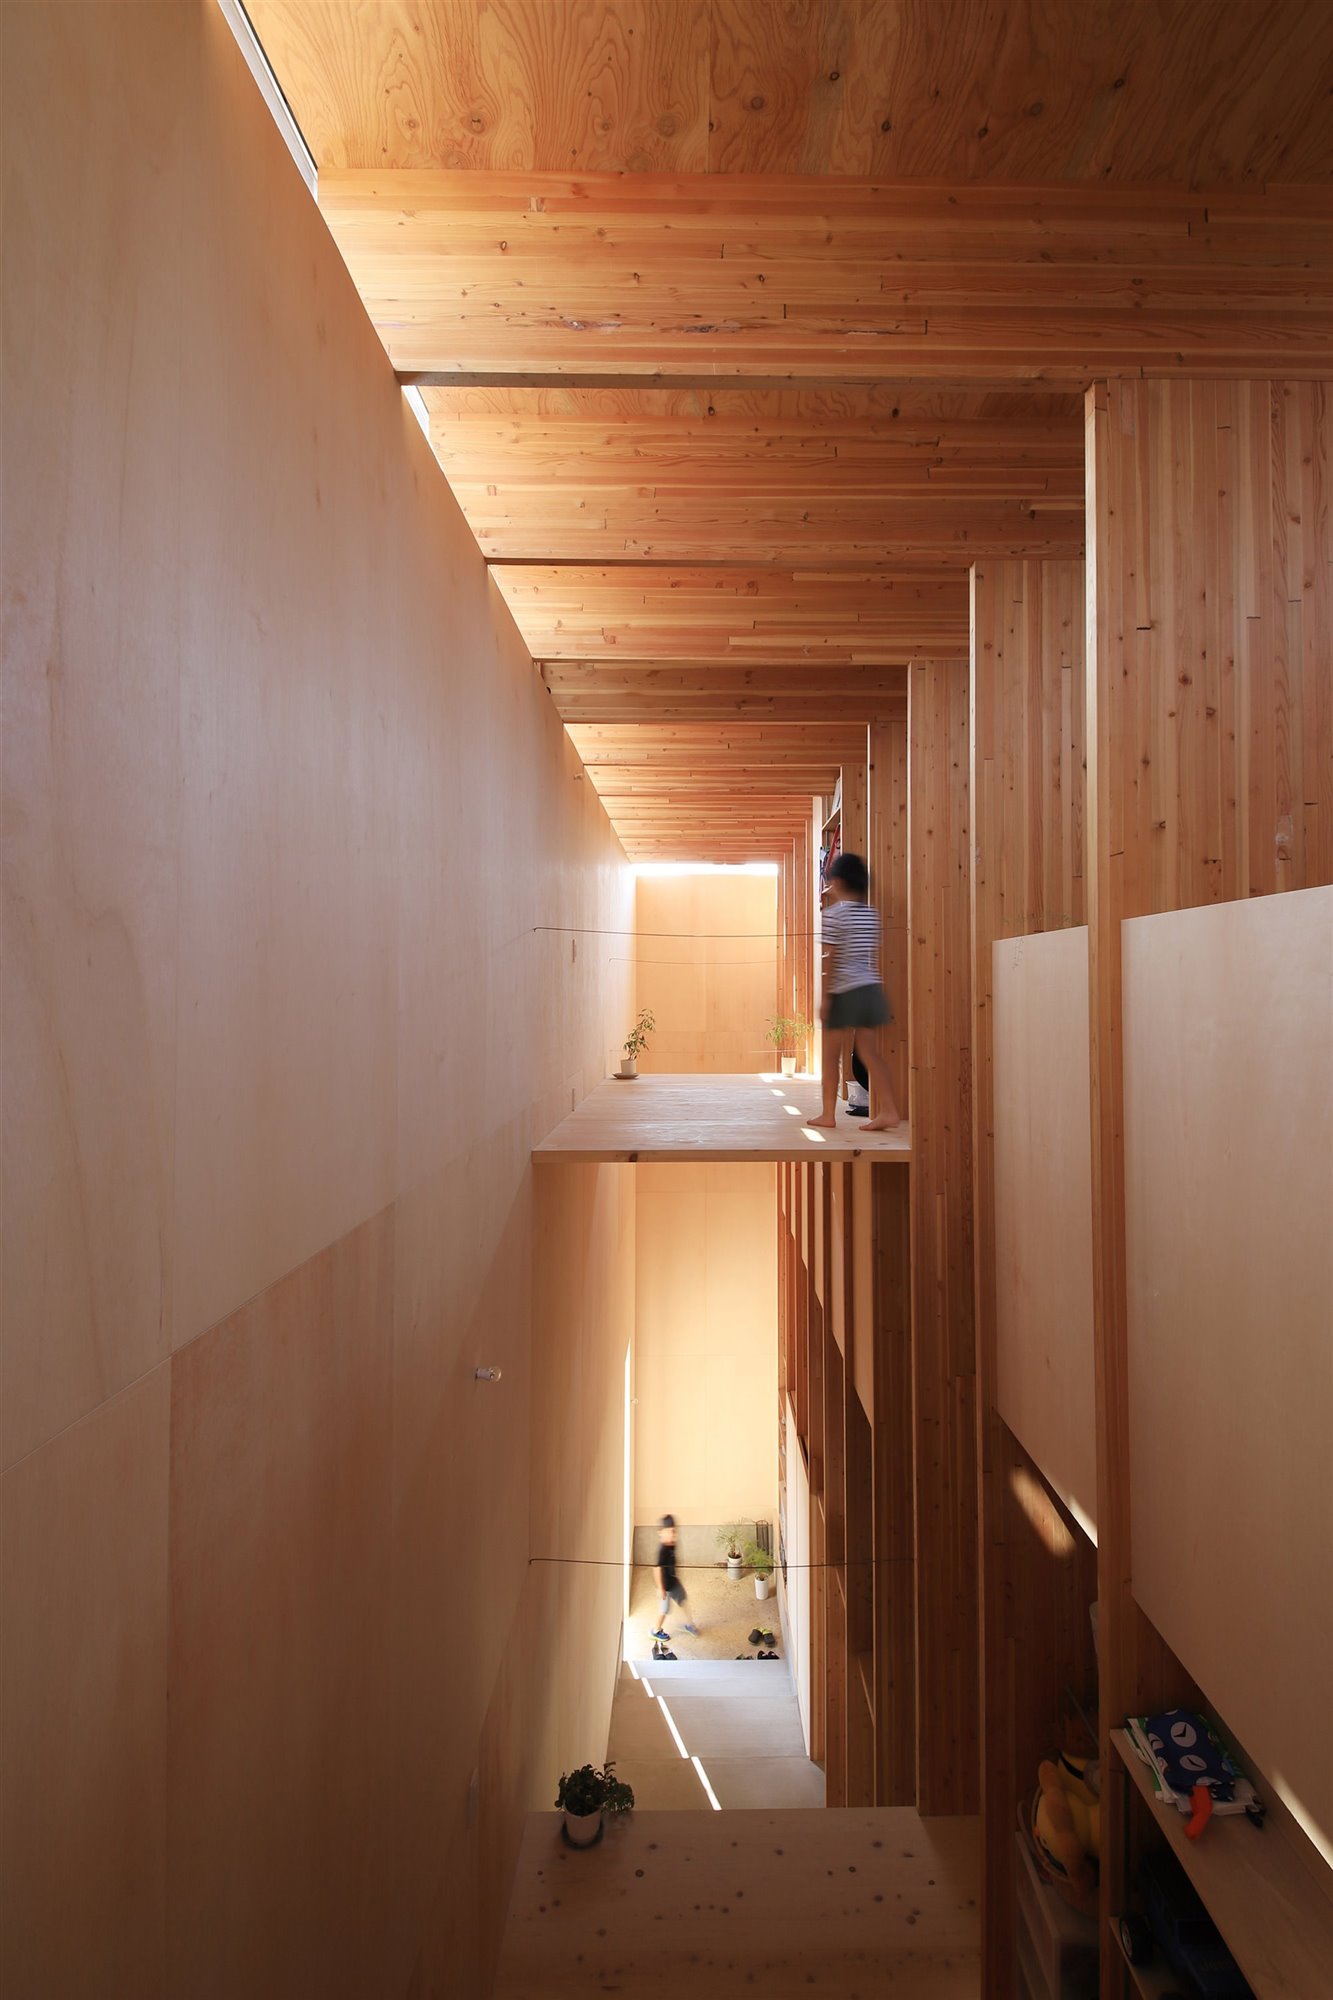 Casa en japon de los arquitectos Katsutoshi Sasaki + Associates con paneles de madera